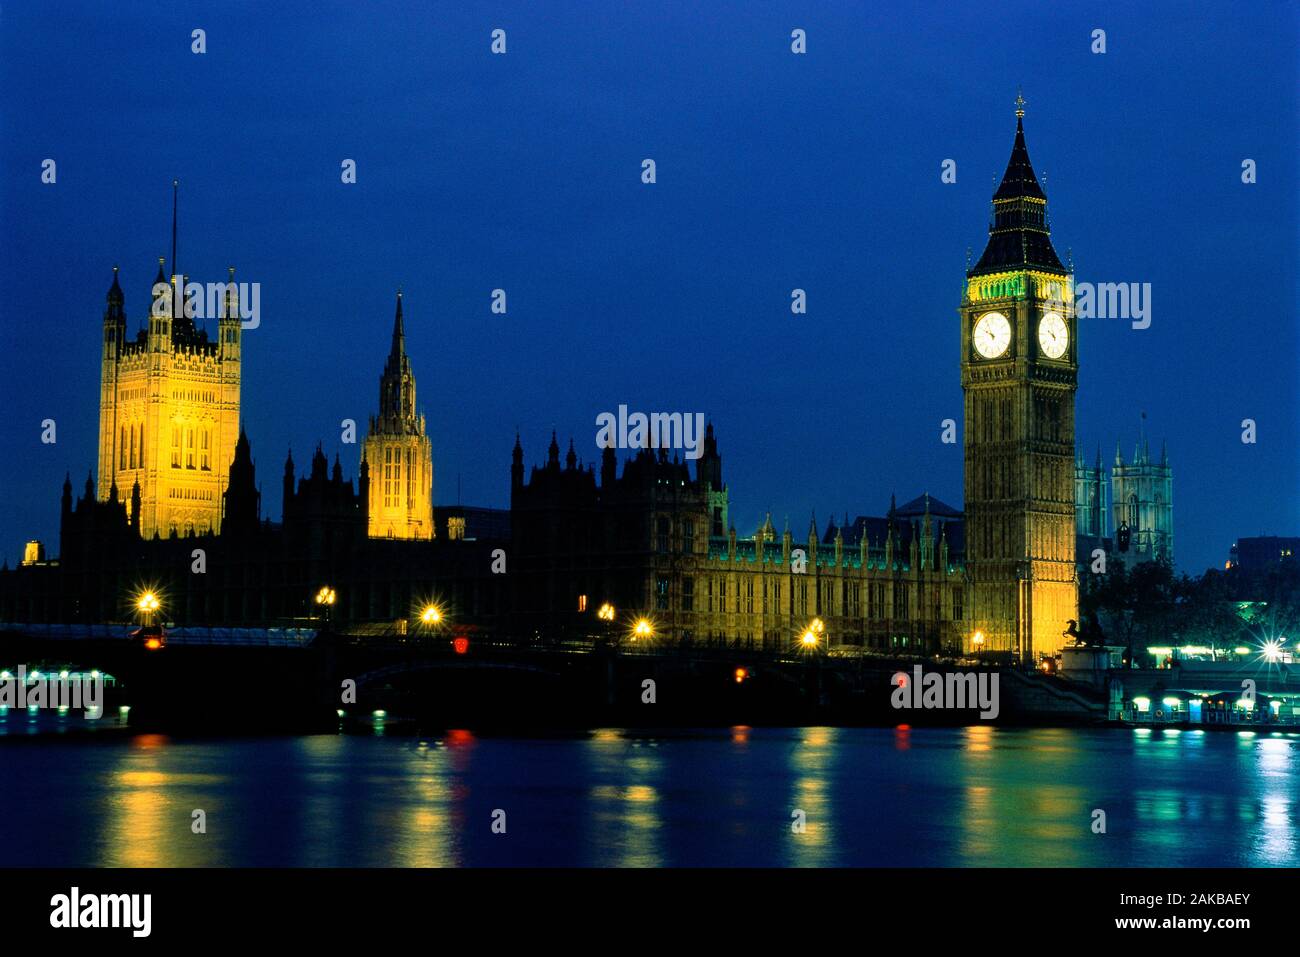 Vue sur le bâtiment du parlement dans la nuit, Londres, Angleterre, Royaume-Uni Banque D'Images